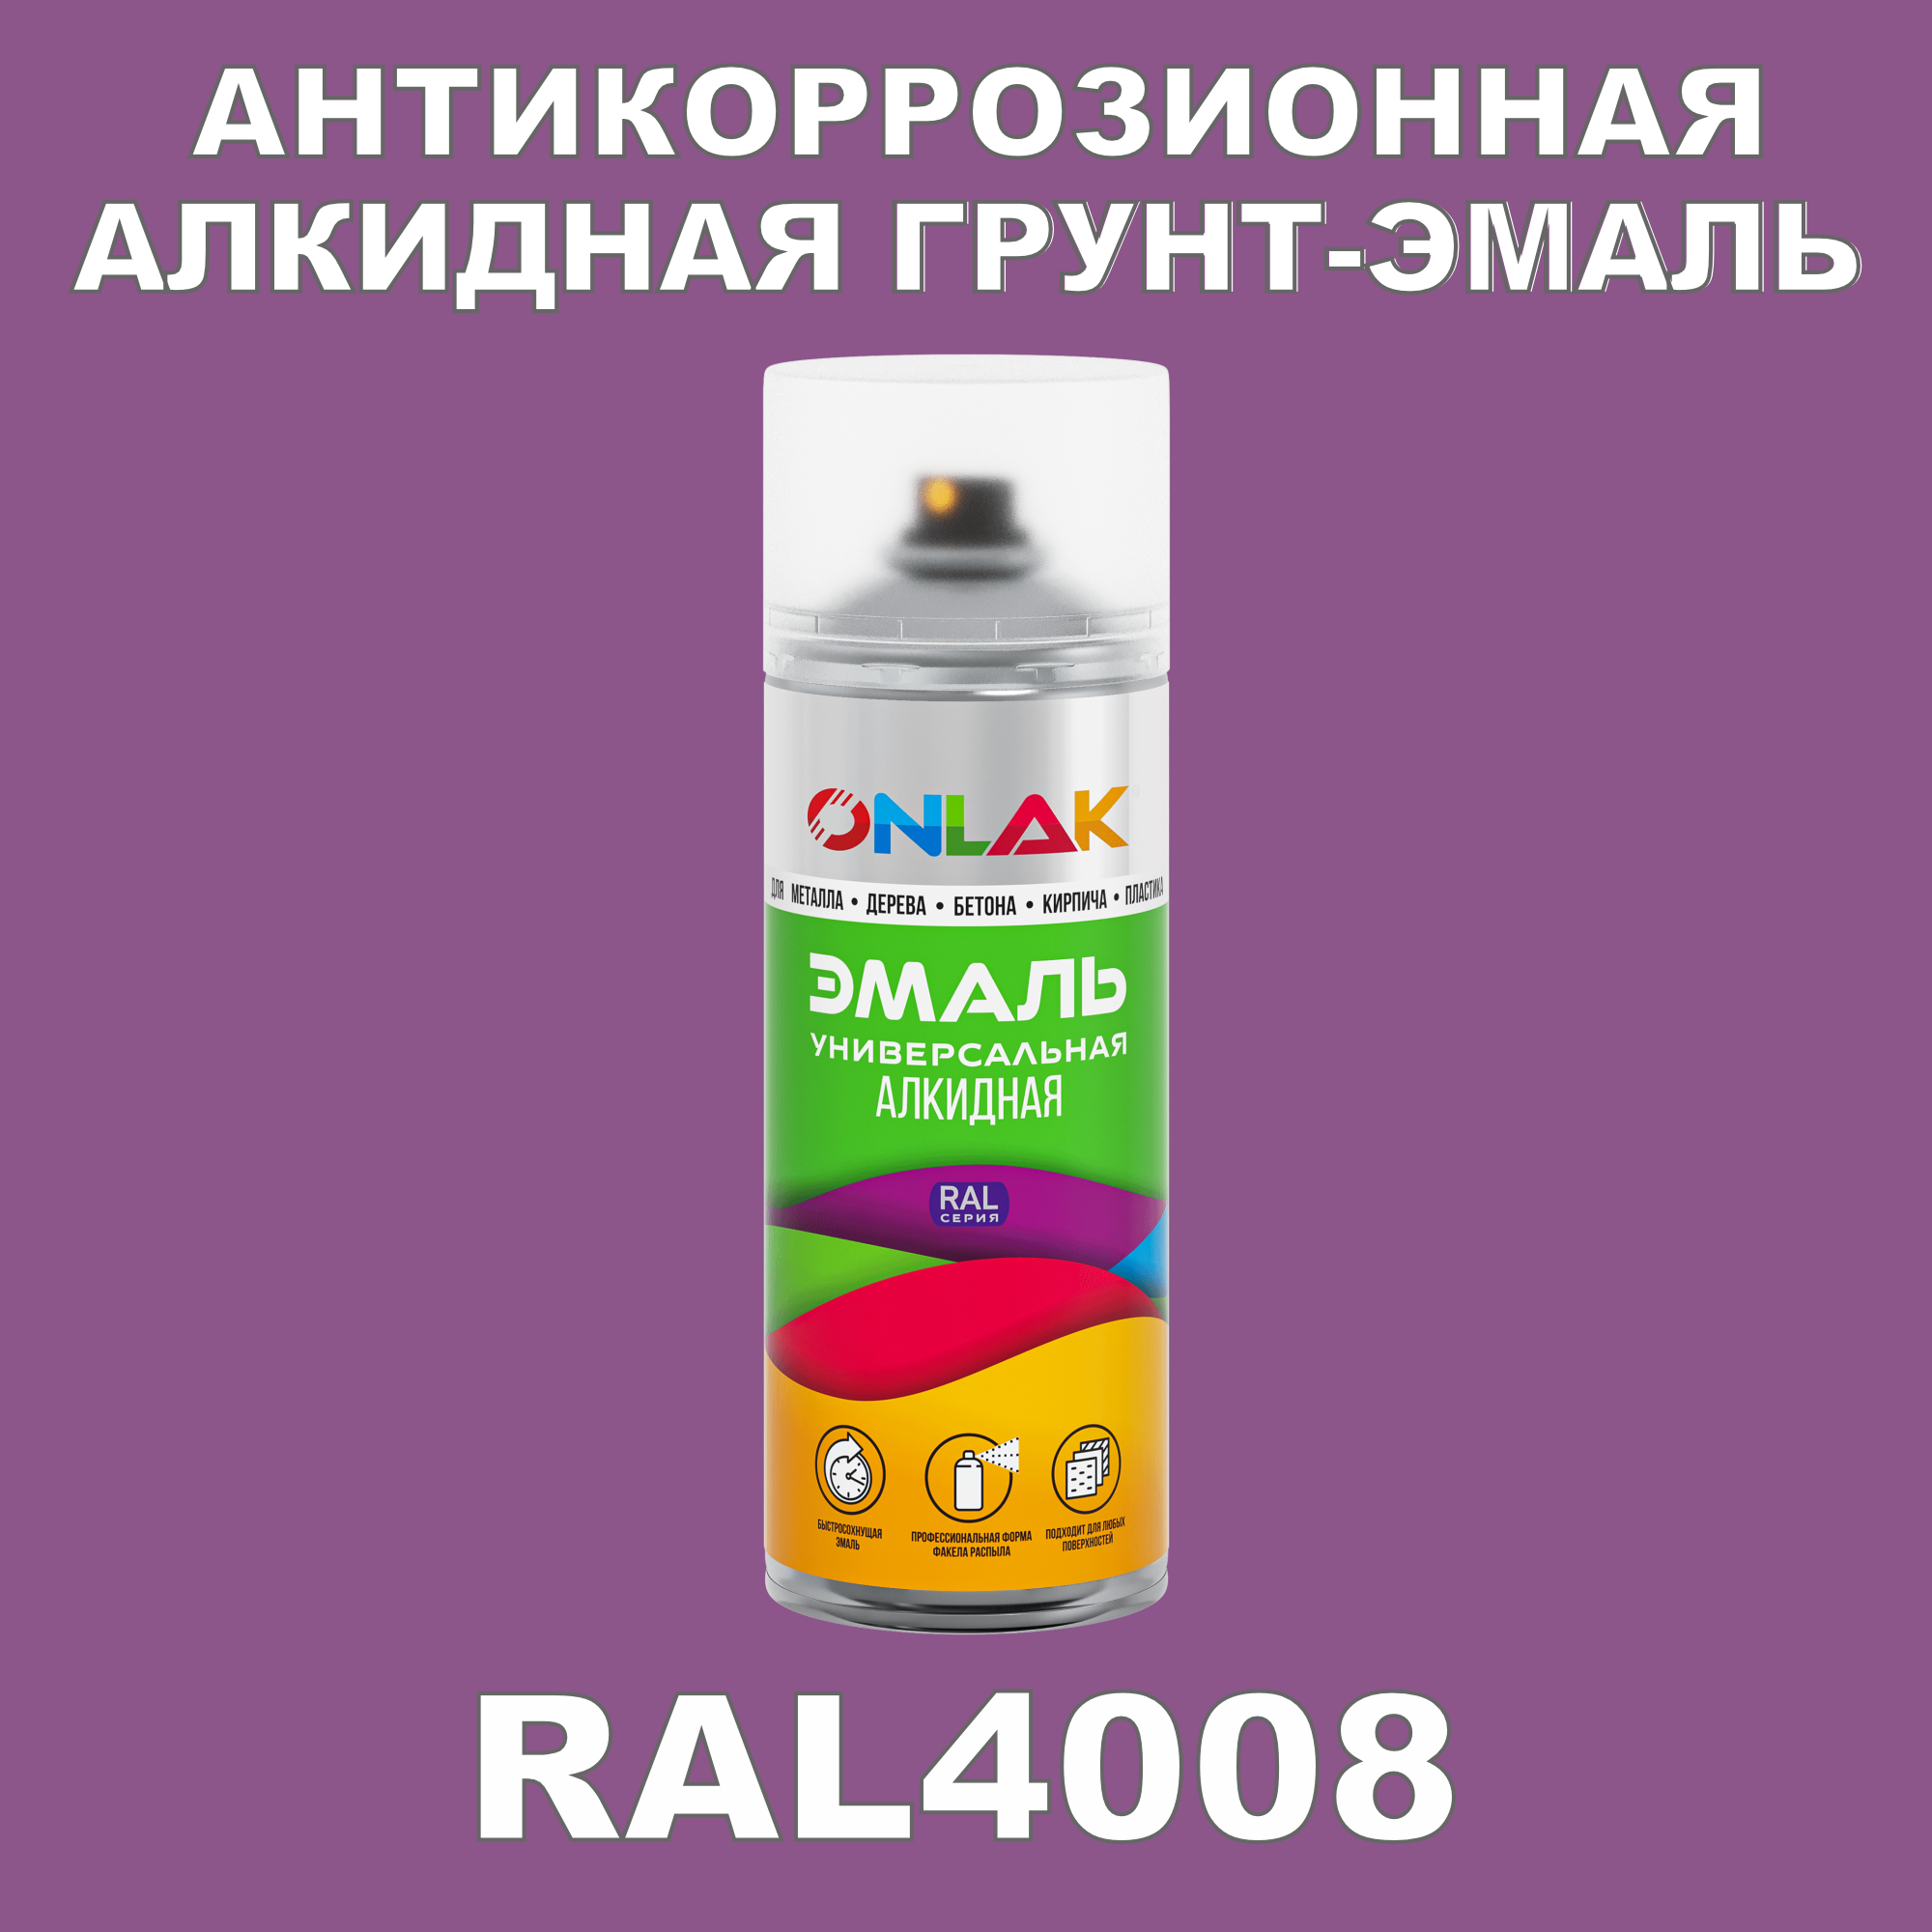 Антикоррозионная грунт-эмаль ONLAK RAL 4008,фиолетовый,610 мл